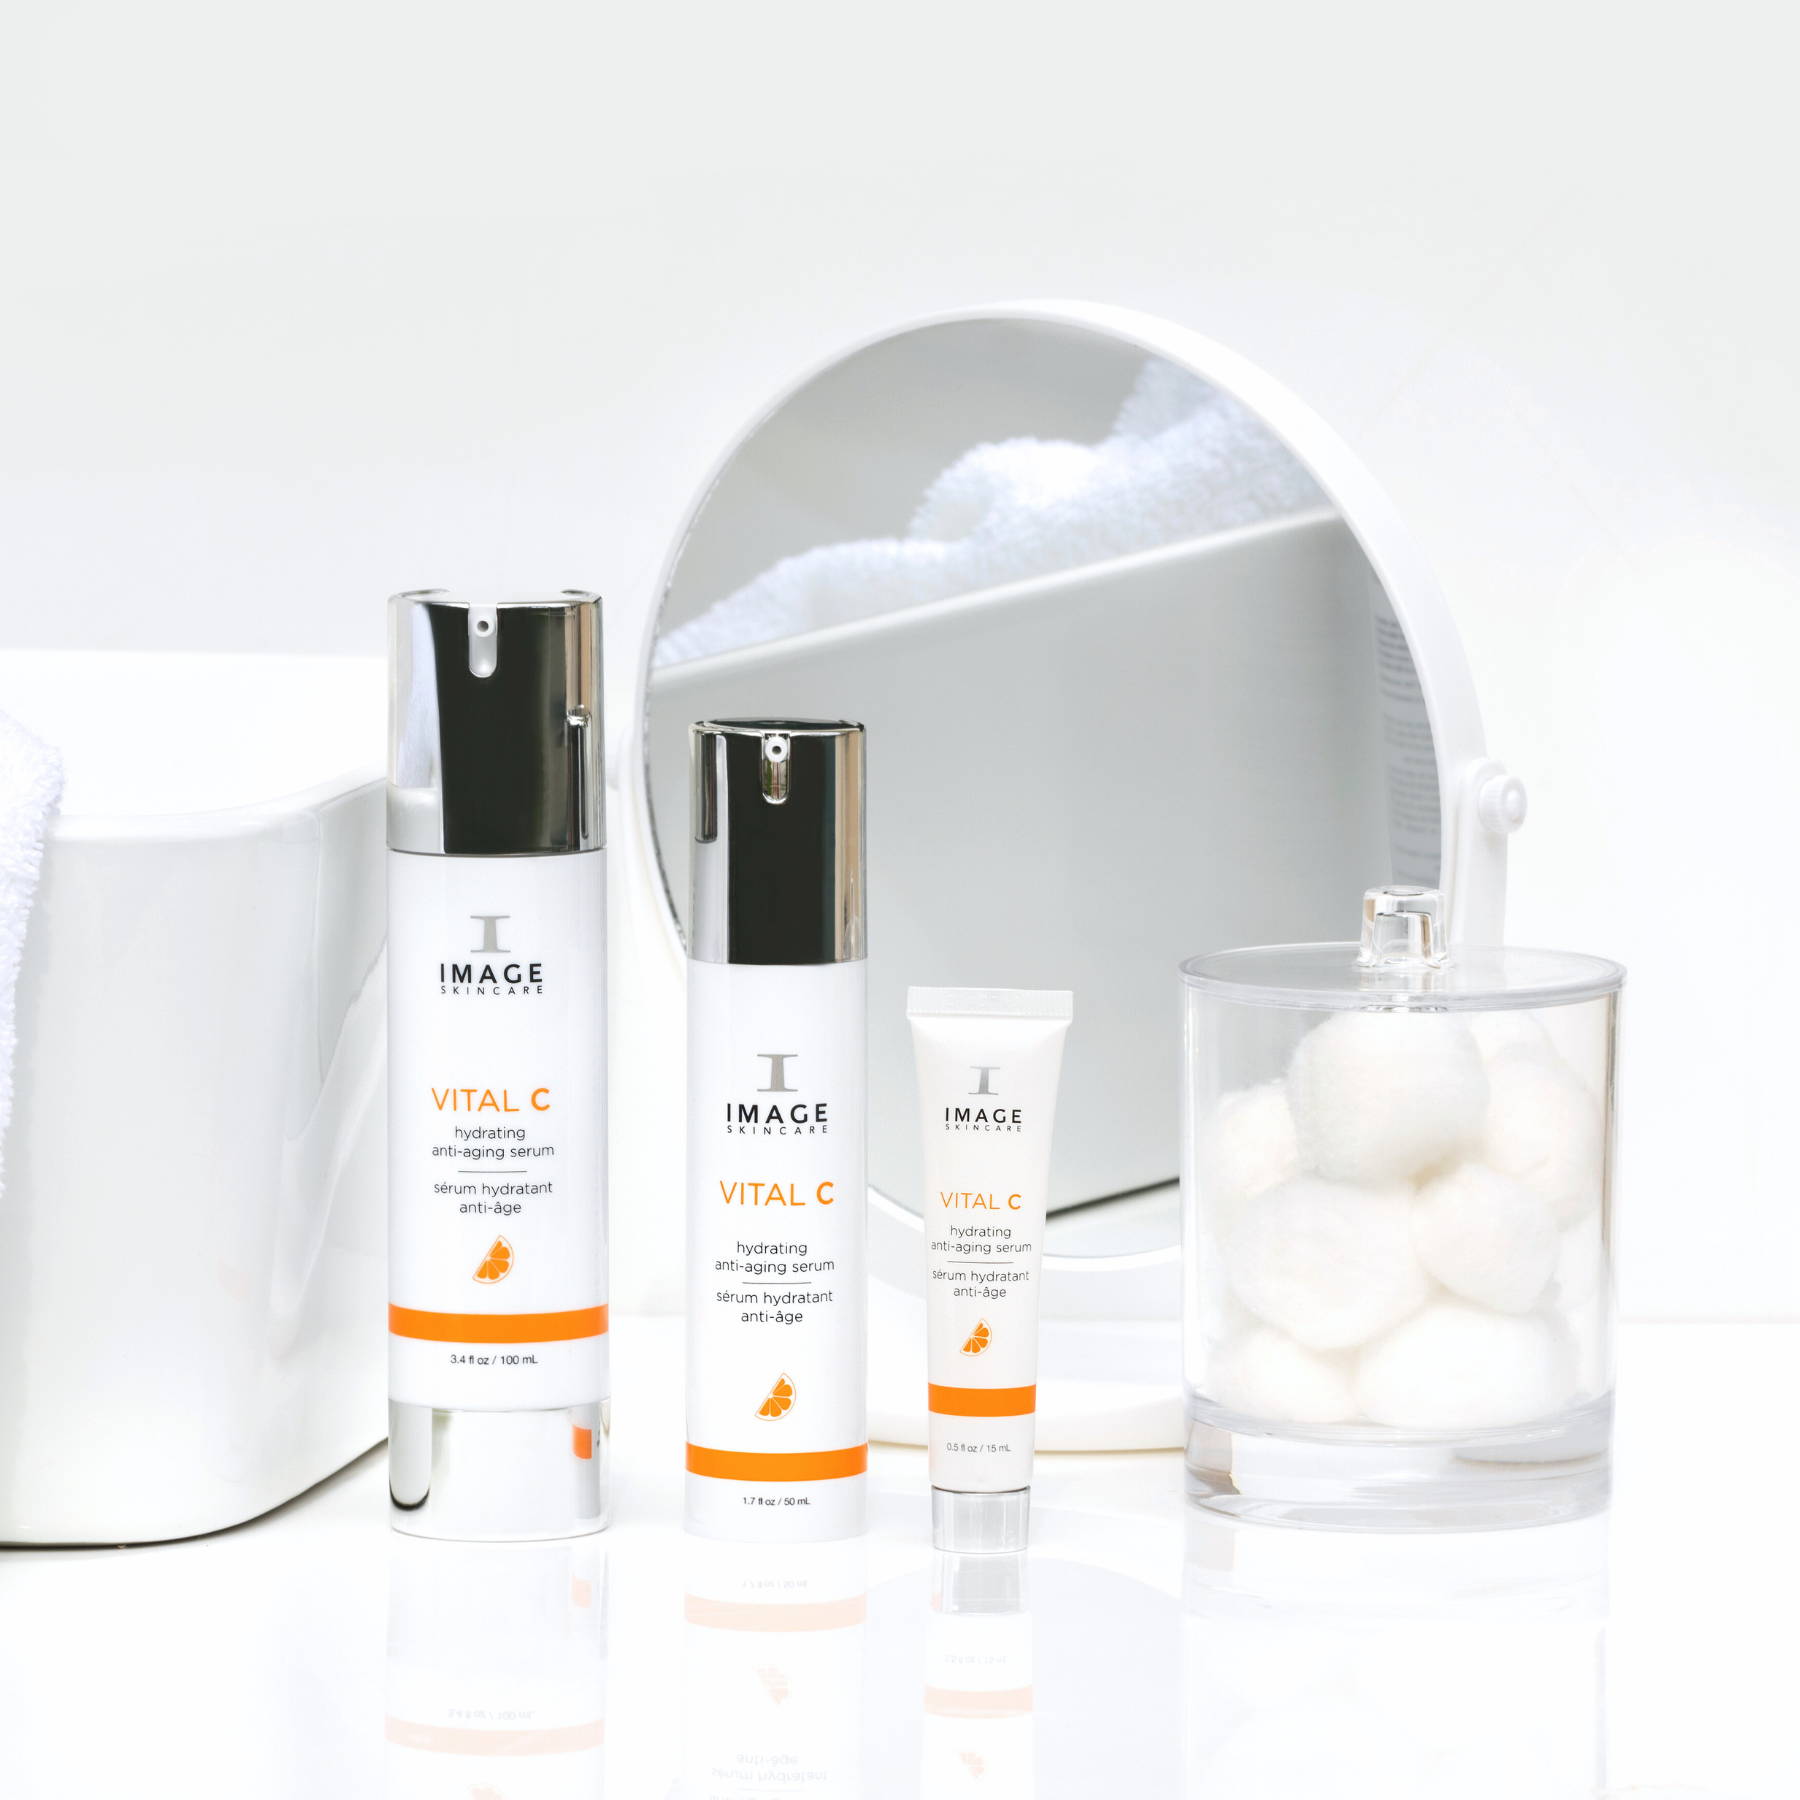 VITAL C Collection für trockene, sensible und dehydrierte Haut bei Facial Room Skincare